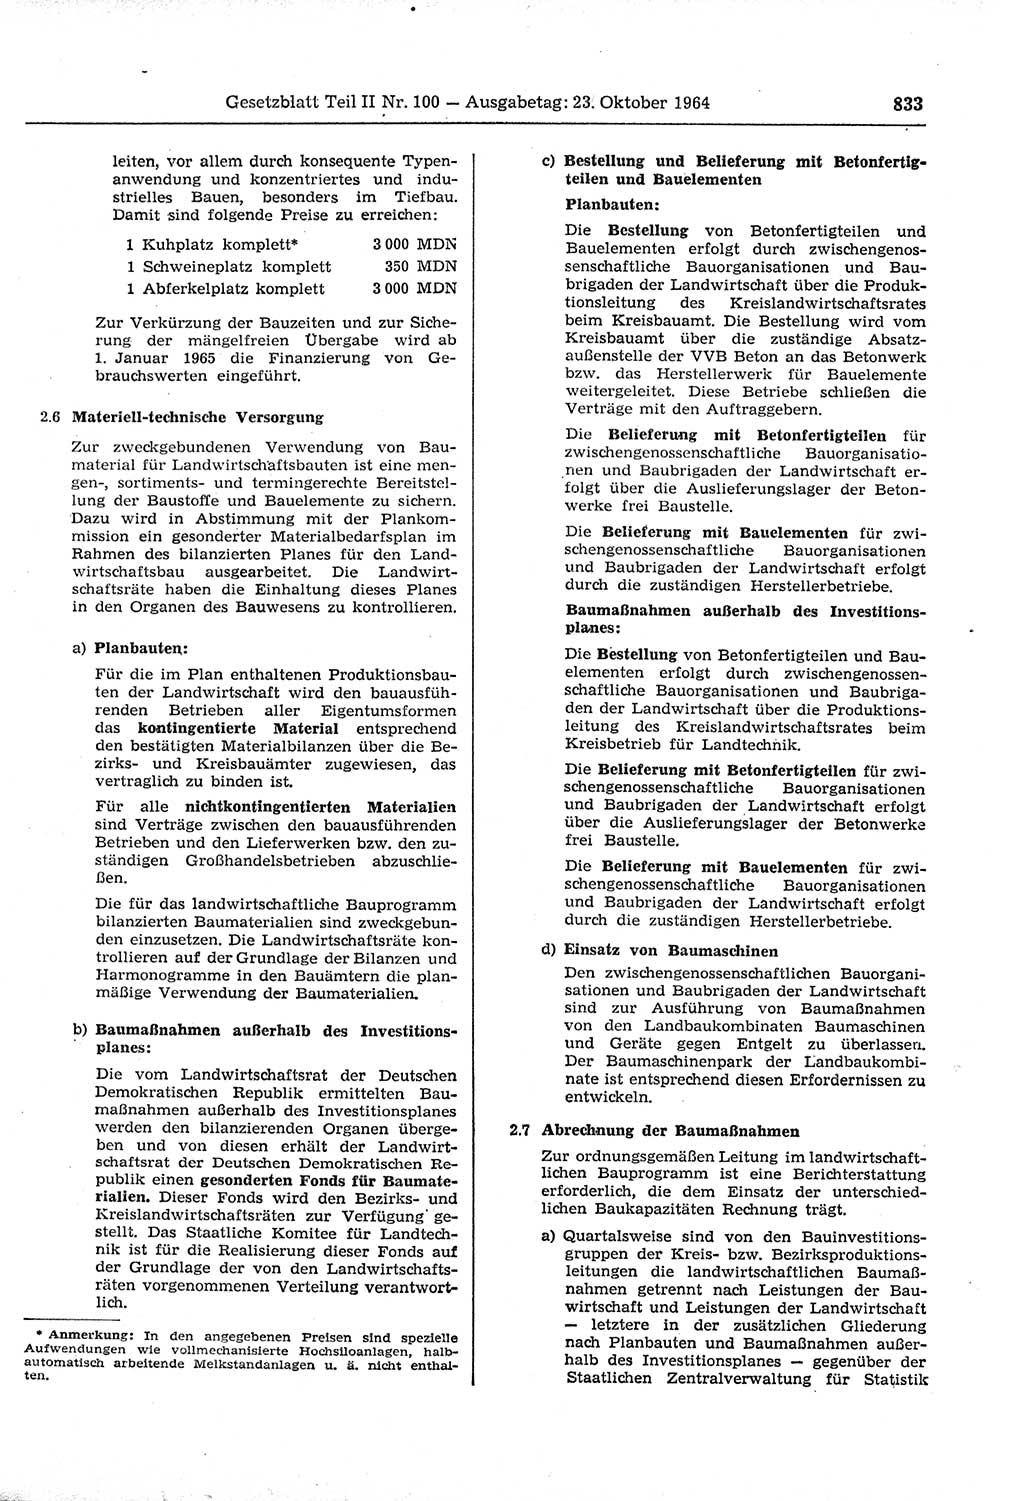 Gesetzblatt (GBl.) der Deutschen Demokratischen Republik (DDR) Teil ⅠⅠ 1964, Seite 833 (GBl. DDR ⅠⅠ 1964, S. 833)